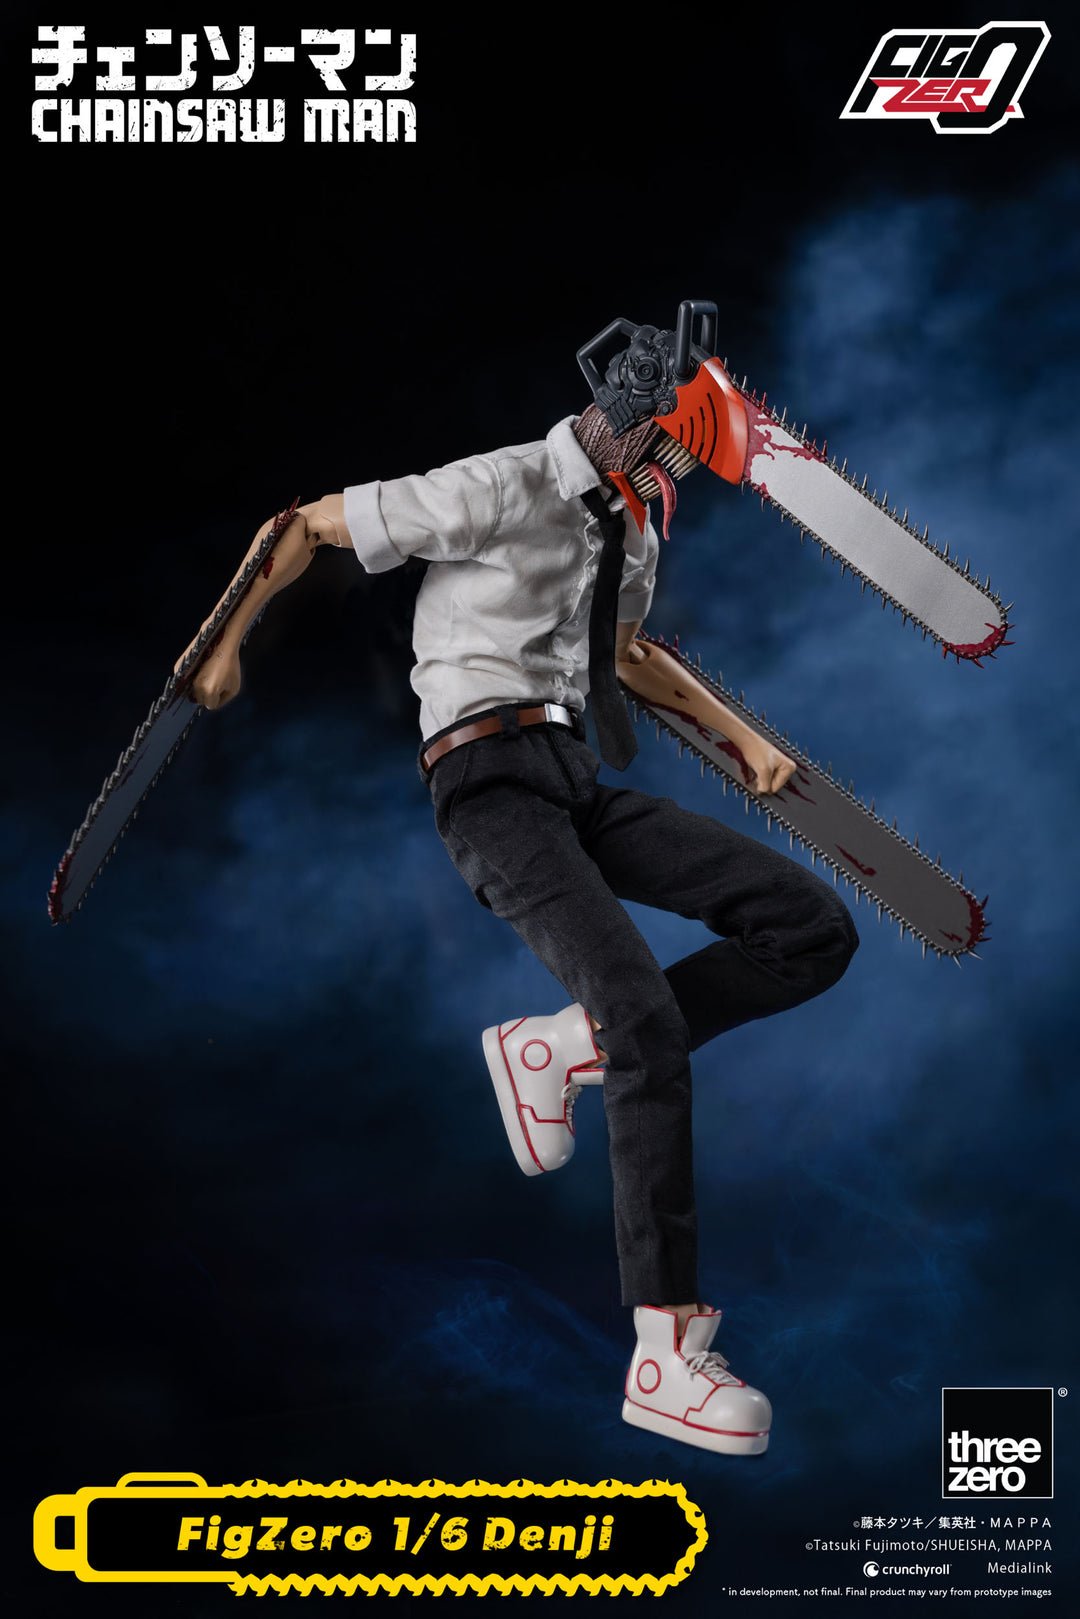 Chainsaw Man FigZero Denji 1/6 Scale Action Figure